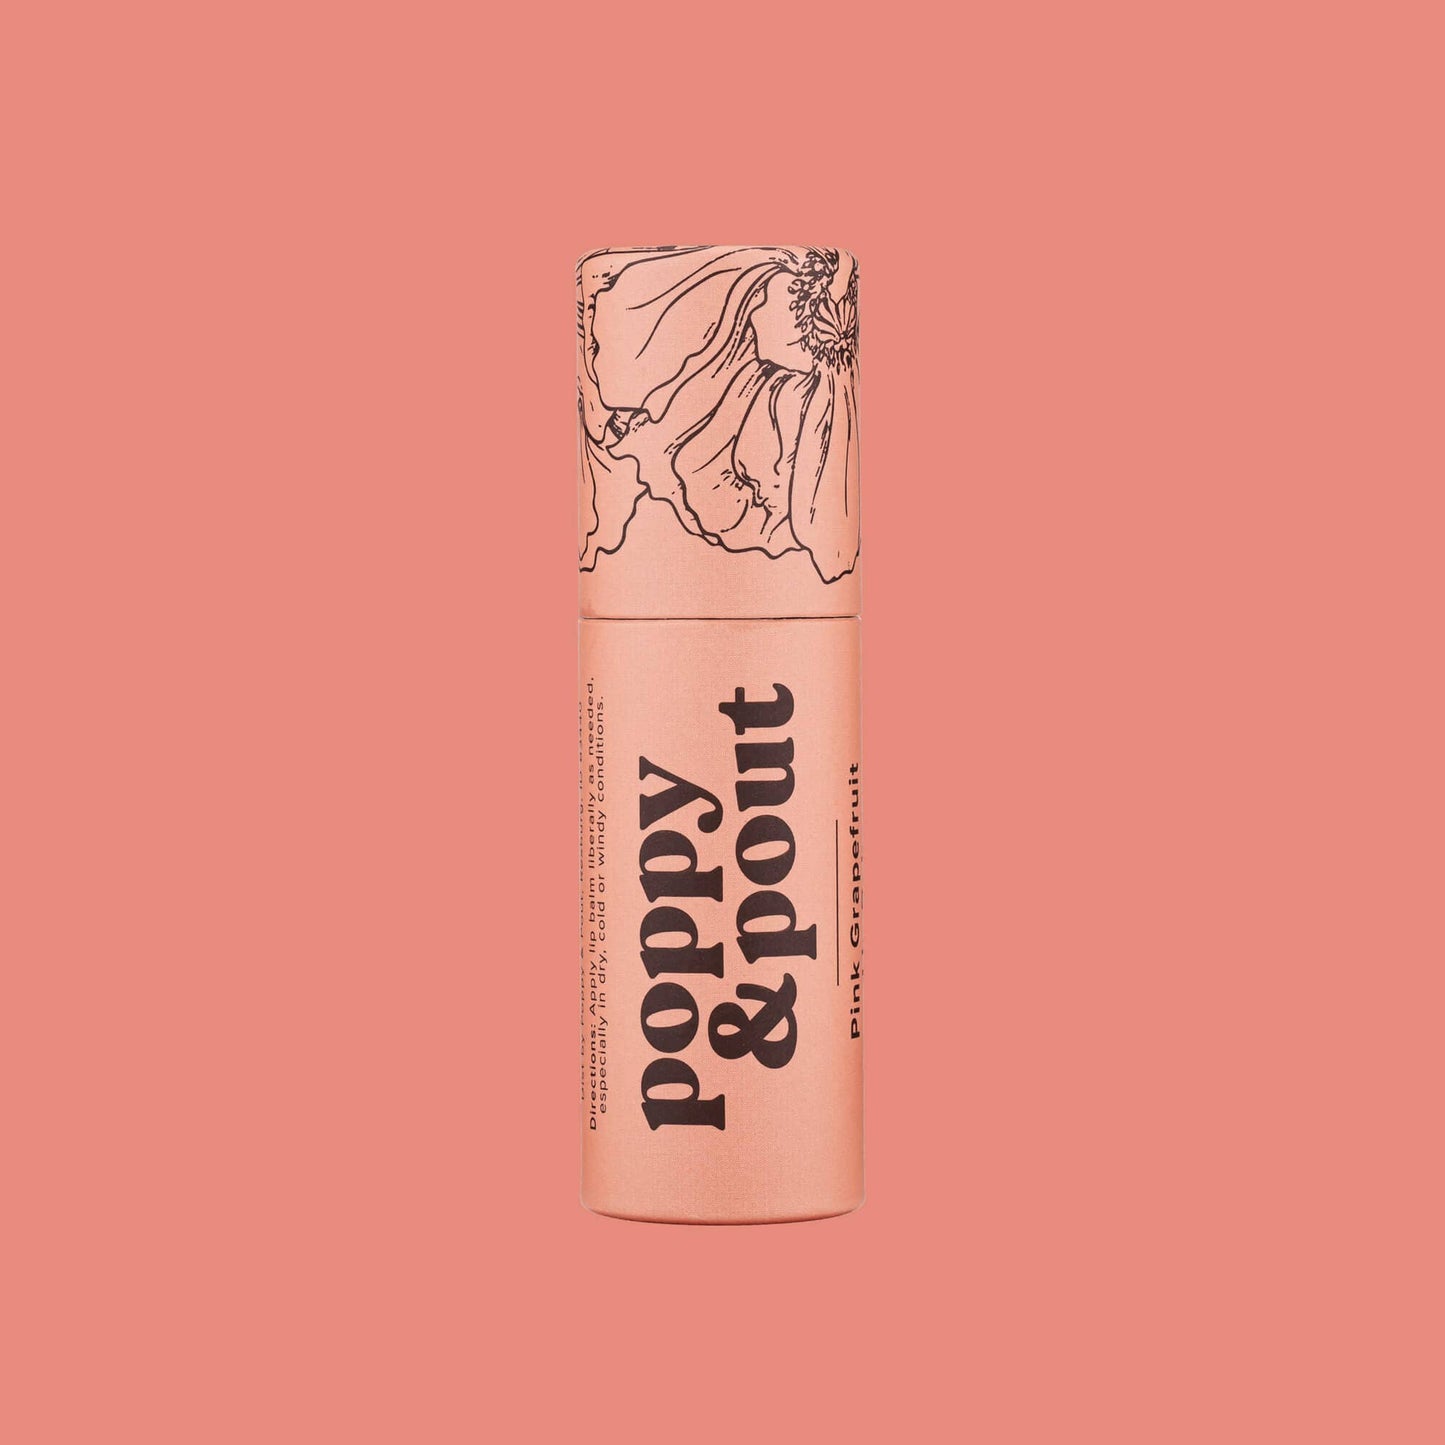 Poppy & Pout - Lip Balm, Pink Grapefruit